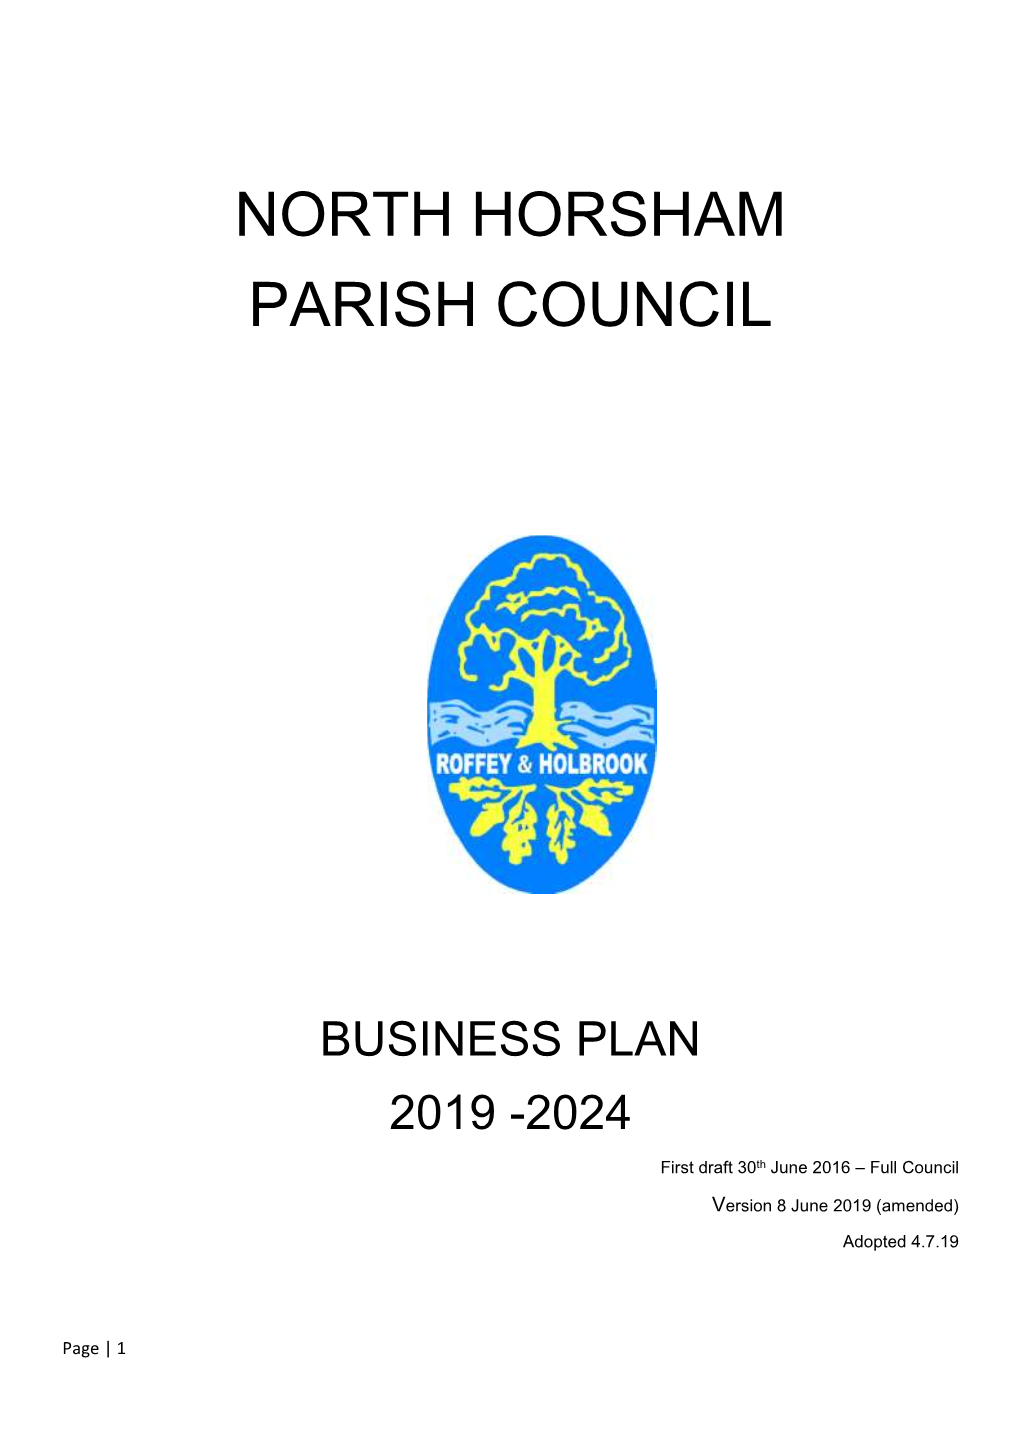 North Horsham Parish Council